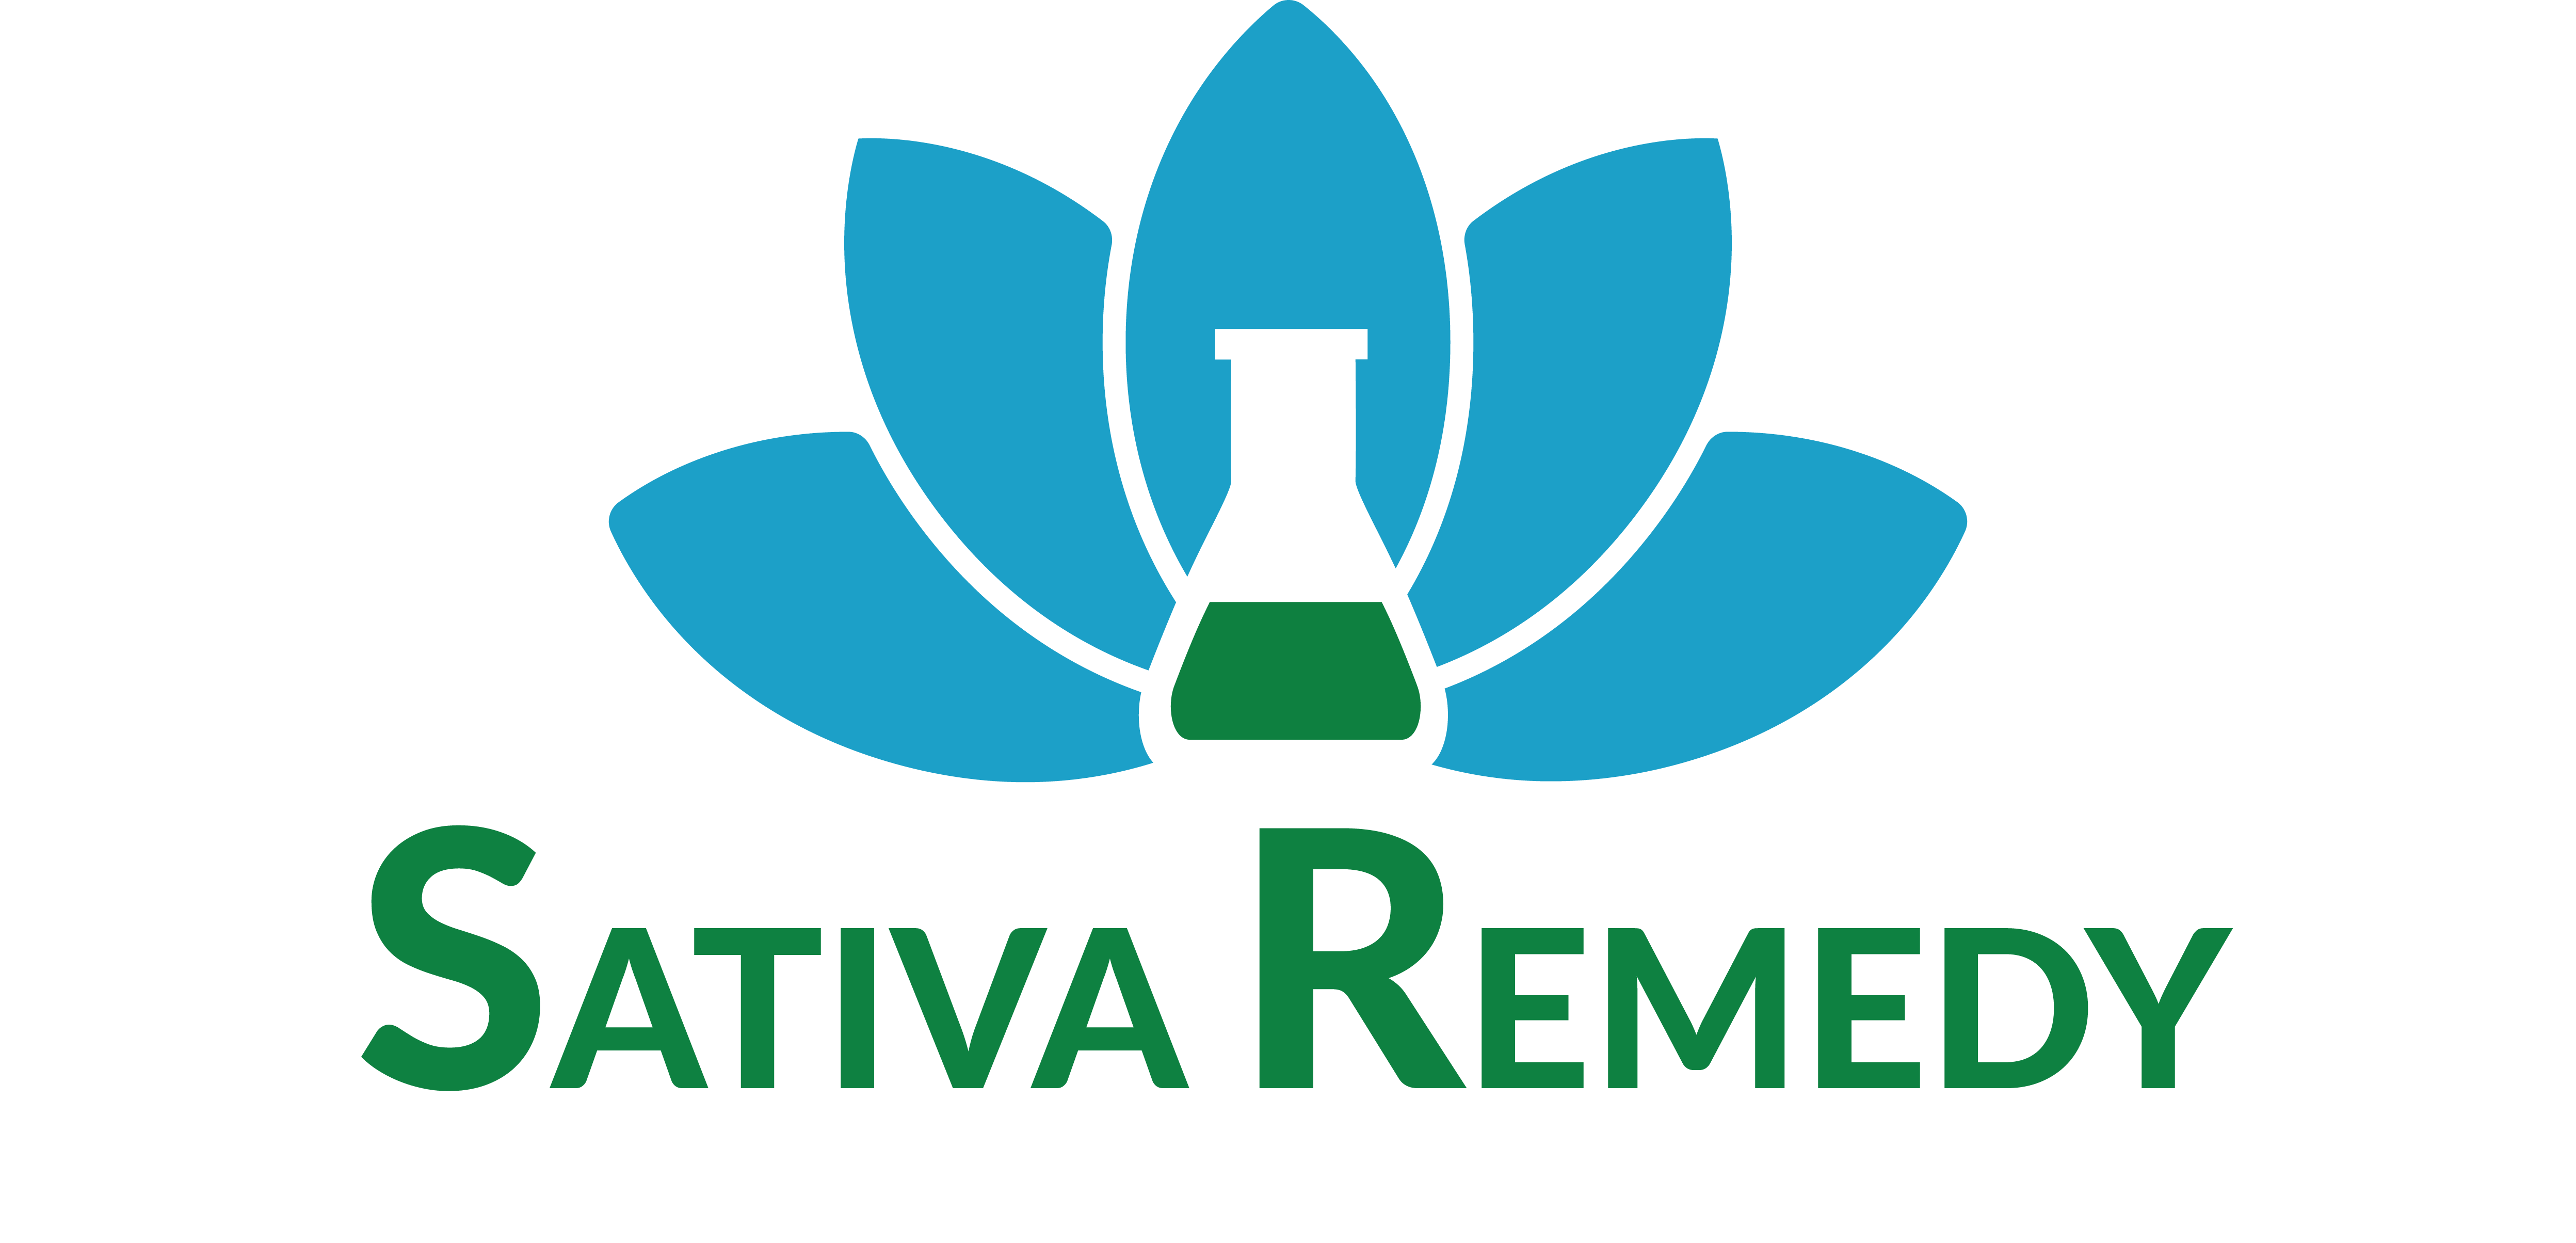 Sativa Remedy - Hemp Dispensary in Buffalo, NY